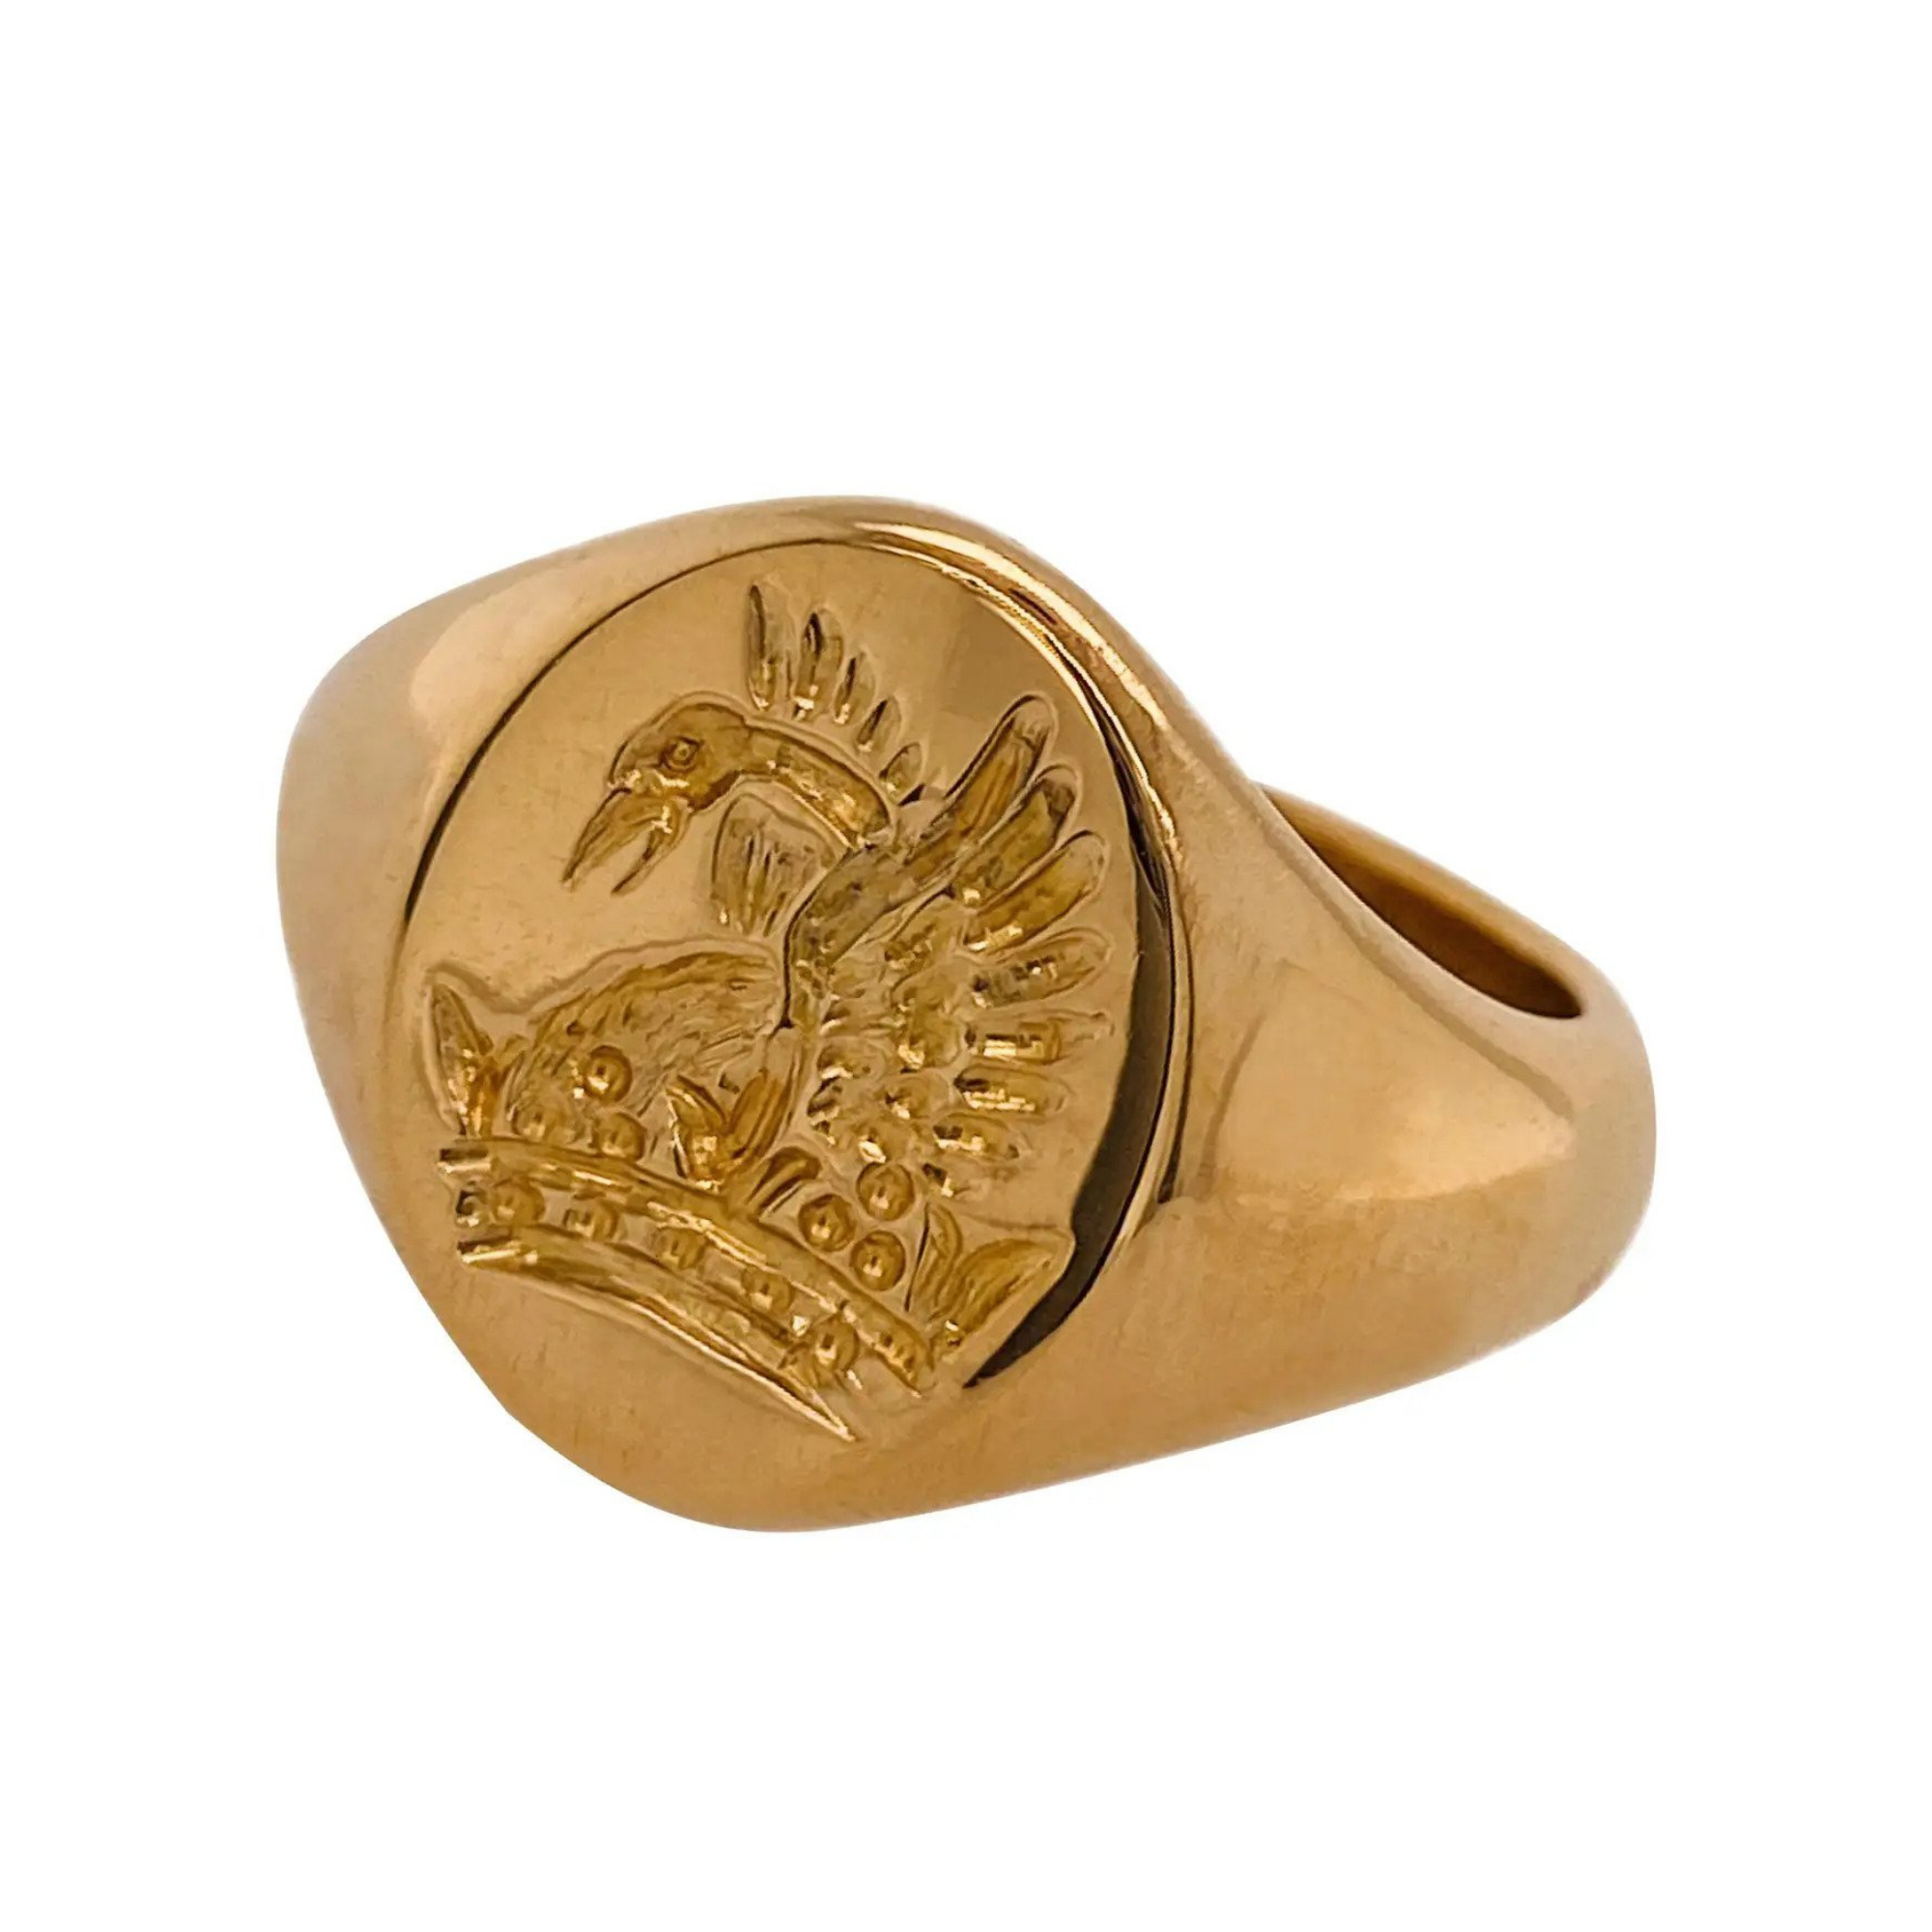 Vintage Rising Phoenix Signet Ring in 22 Carat Yellow Gold, $1,780